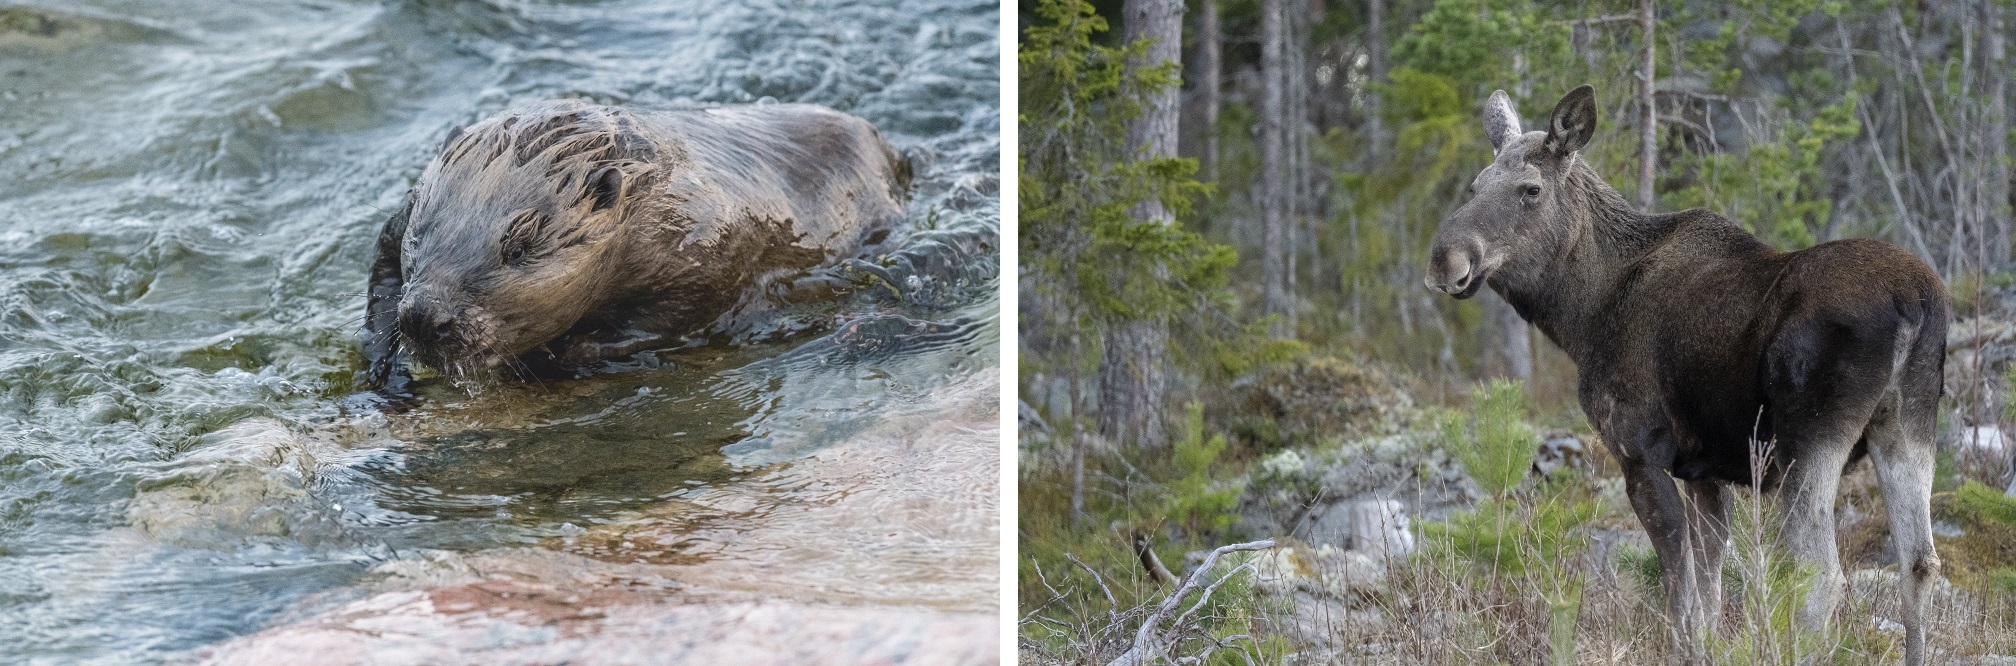 Collage met een bever in het water en een eland in het bos.